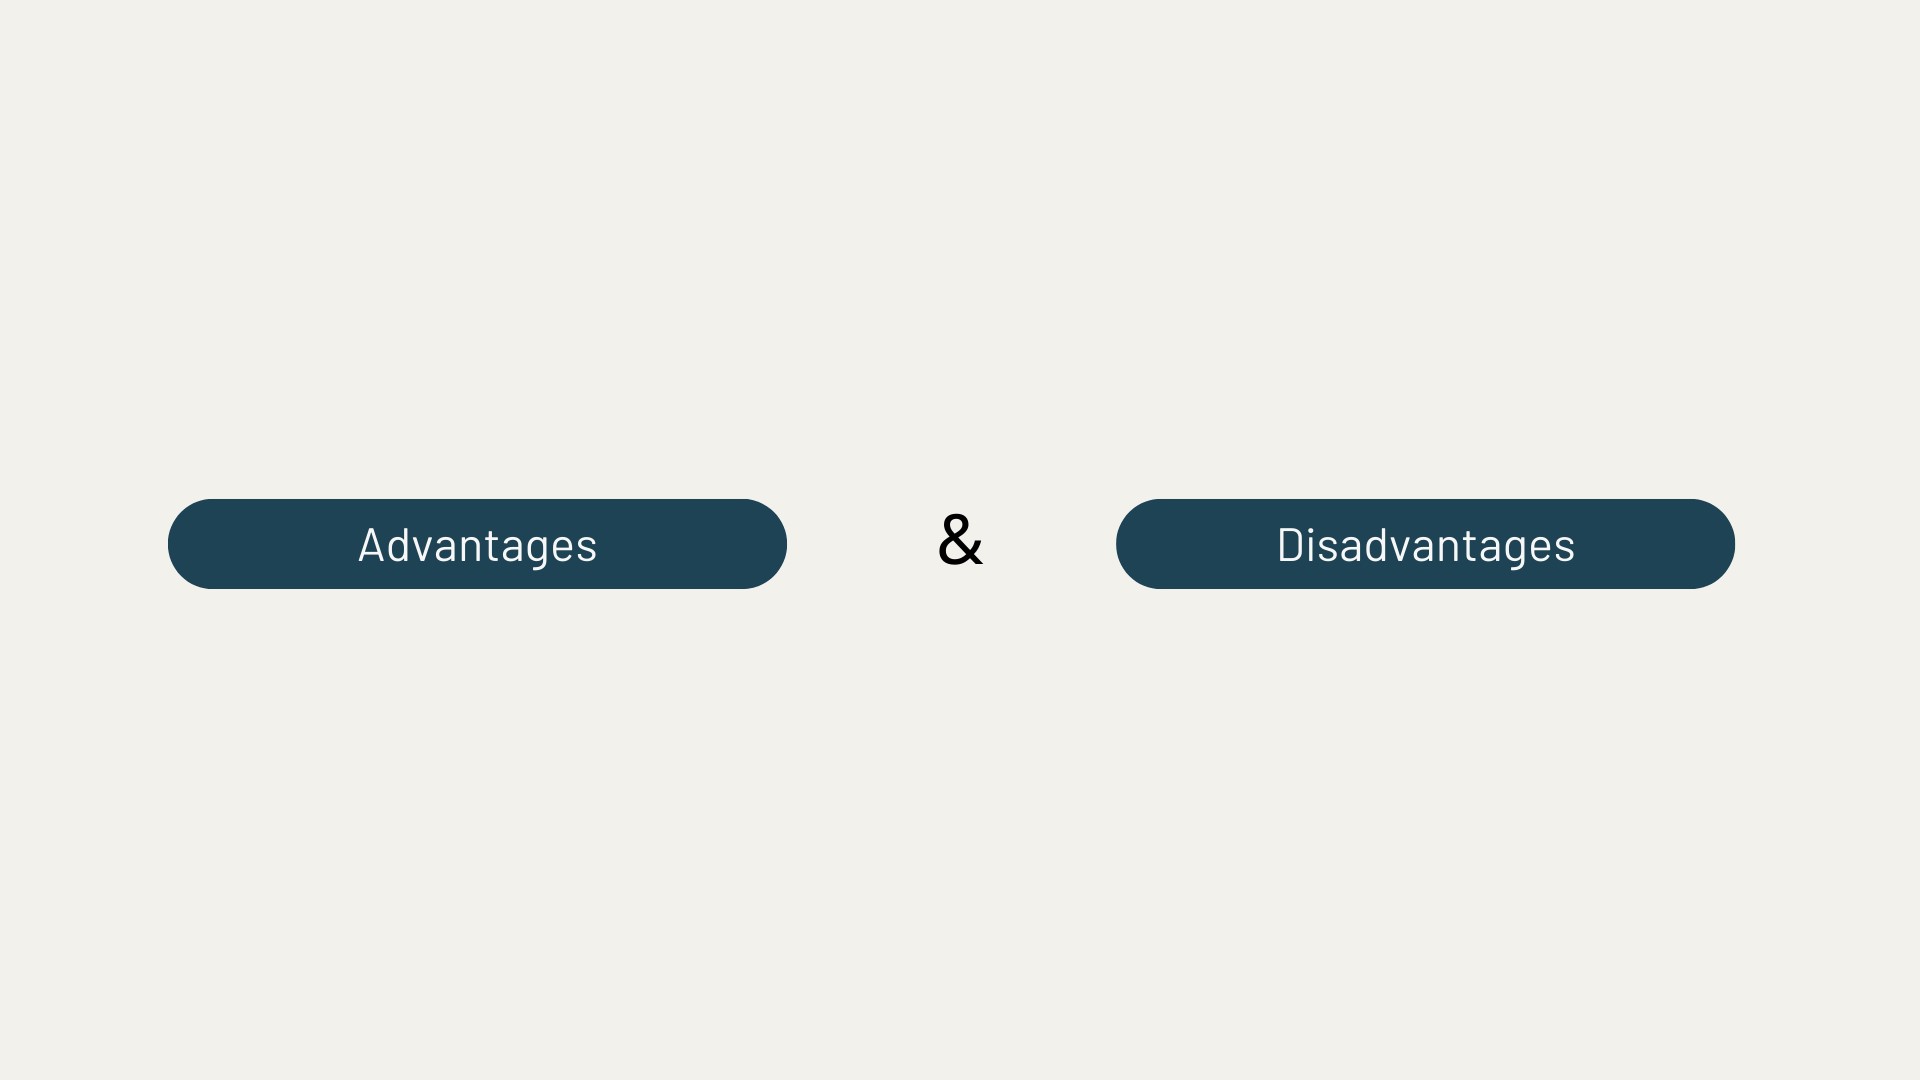 Advantages and Disadvantages